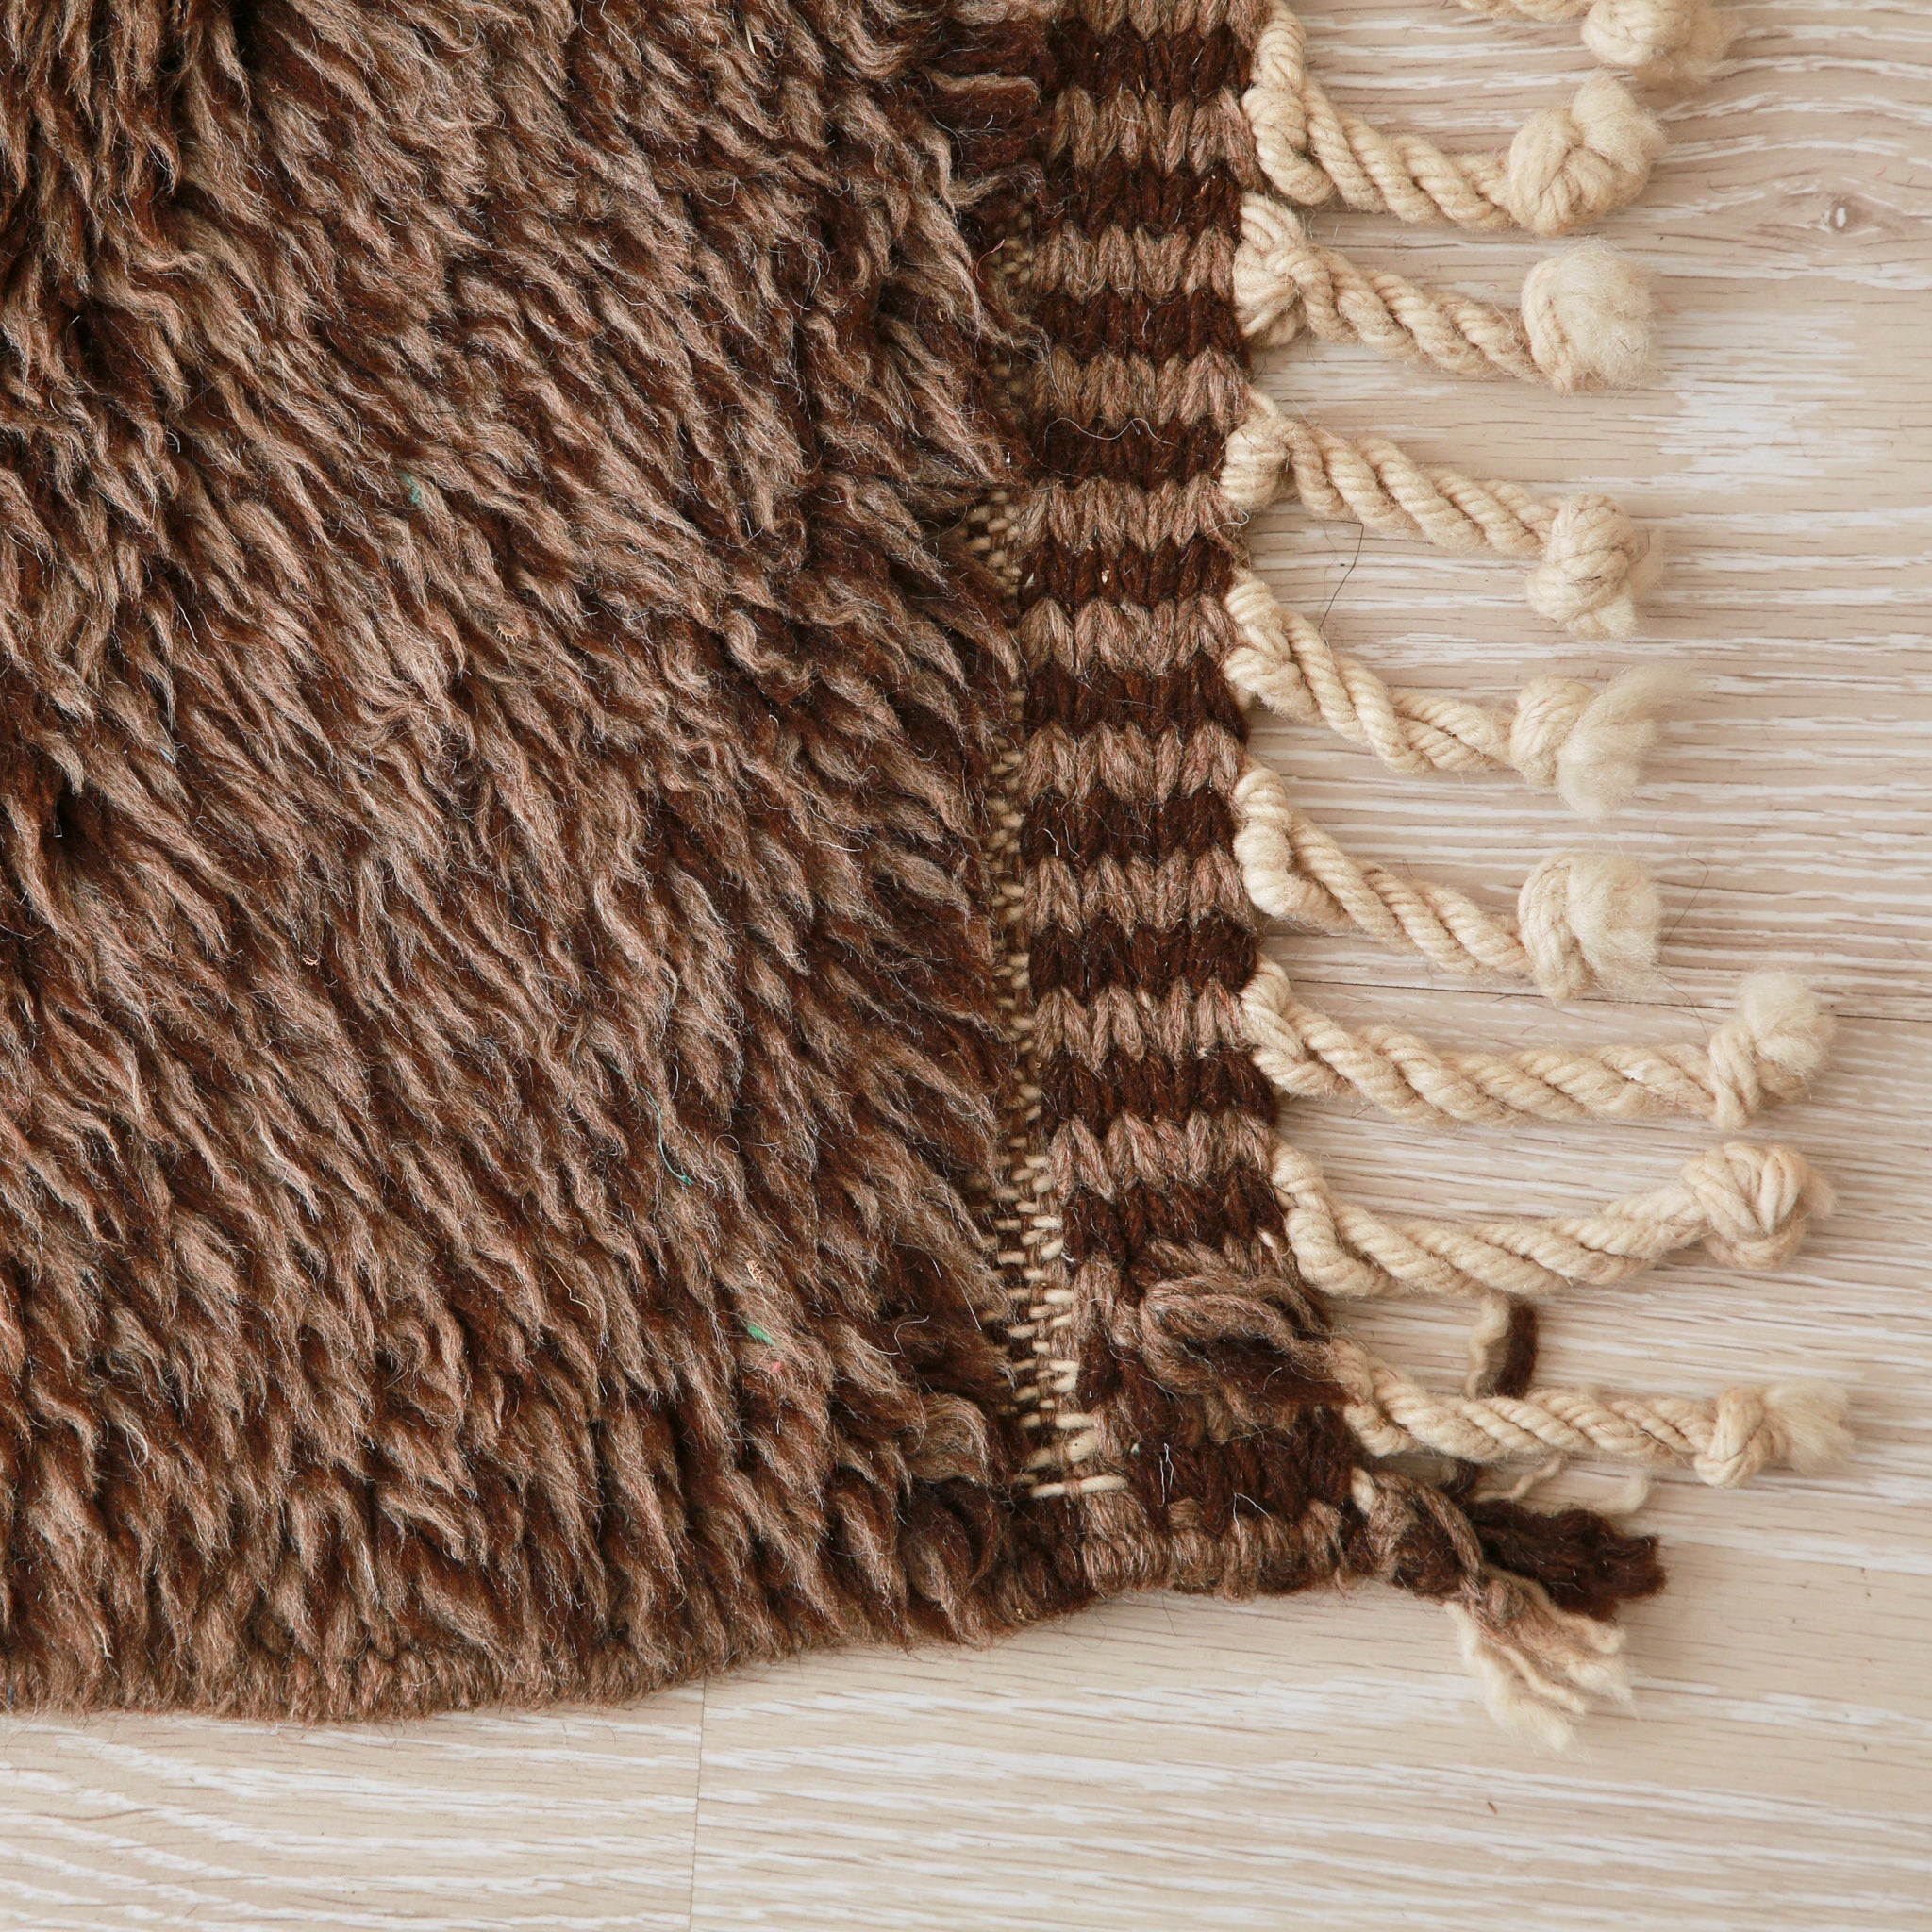 angolo del tappeto beni mrirt realizzato in lana naturale marrone